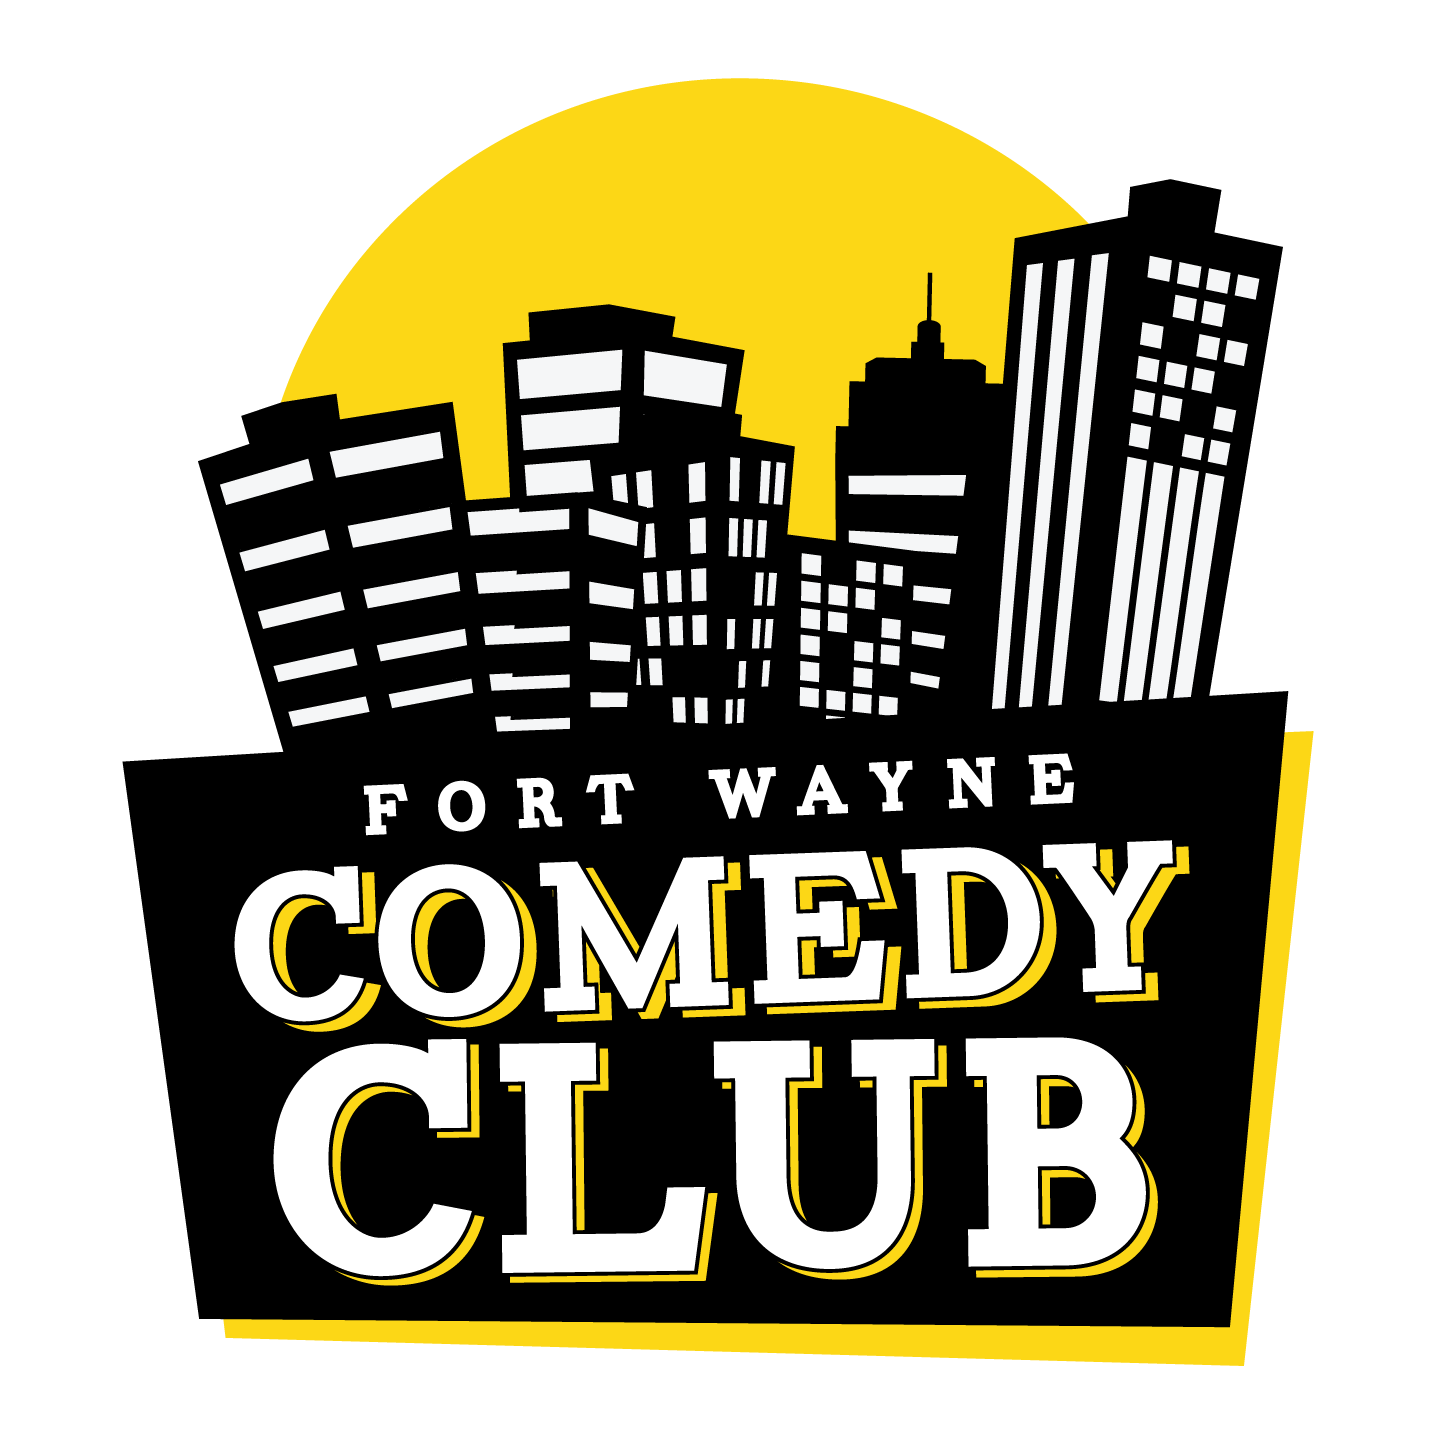 Fort Wayne Comedy Club